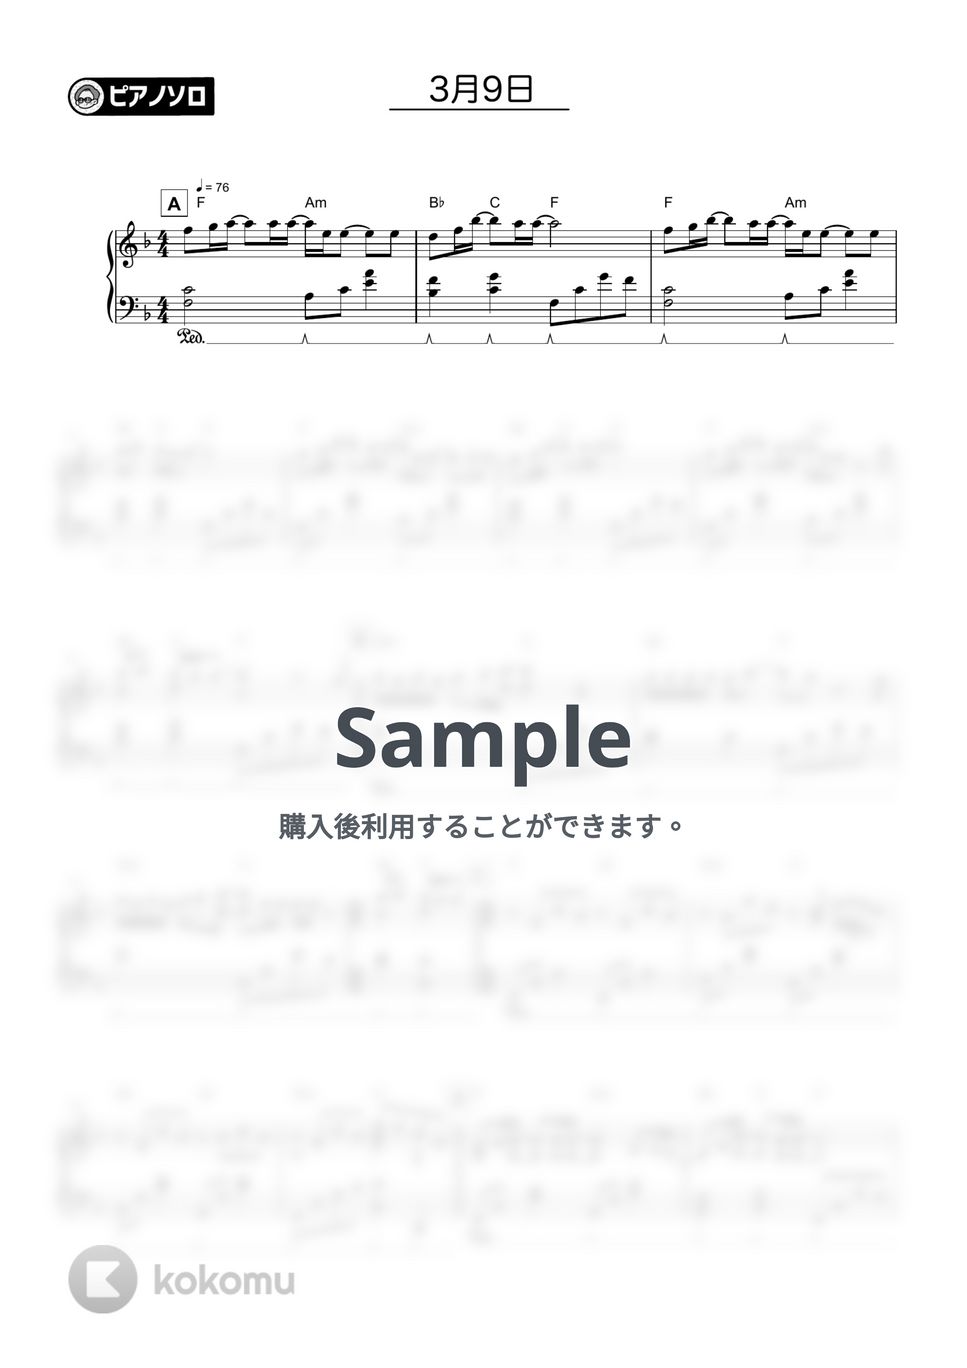 レミオロメン - 3月9日 by シータピアノ